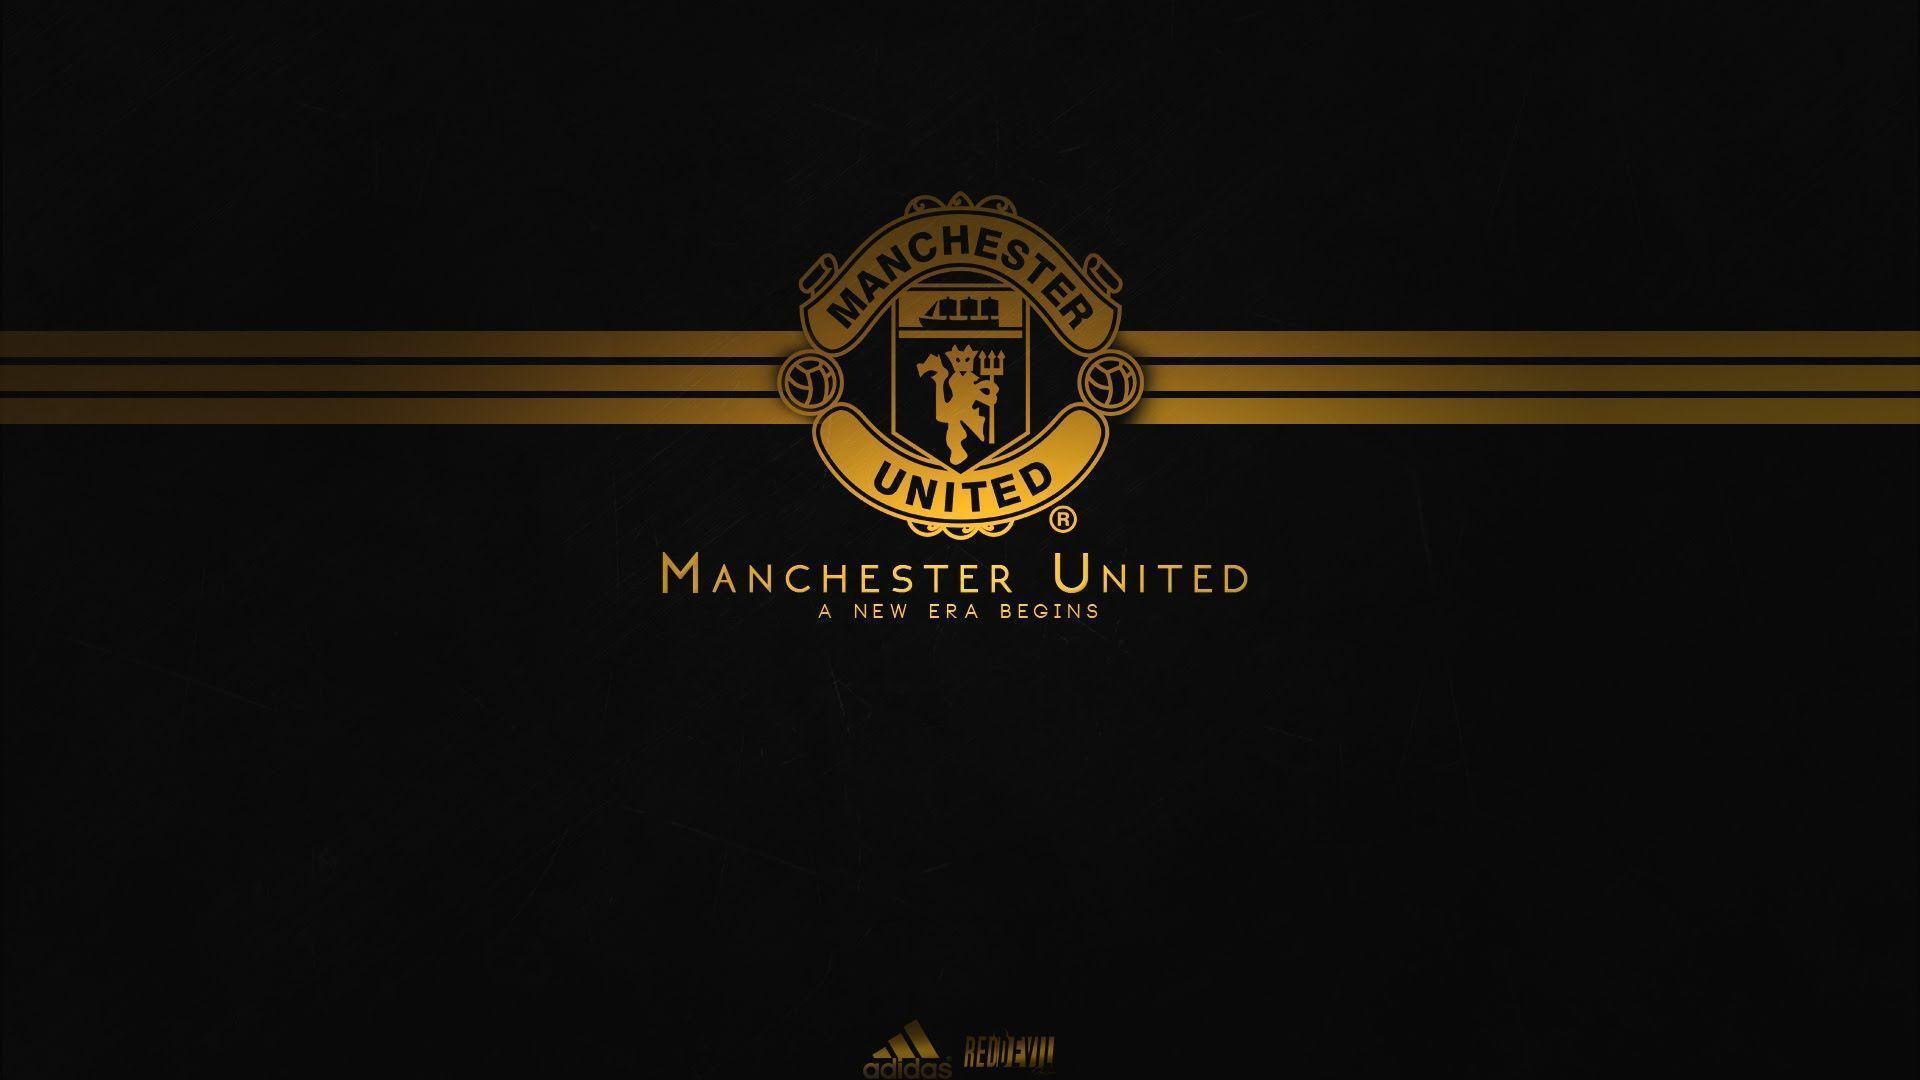 Ghim của Khaleel J trên Manchester Utd illustration Bóng đá Thể thao Hình ảnh Manchester United 2020 HD phone wallpaper Pxfuel